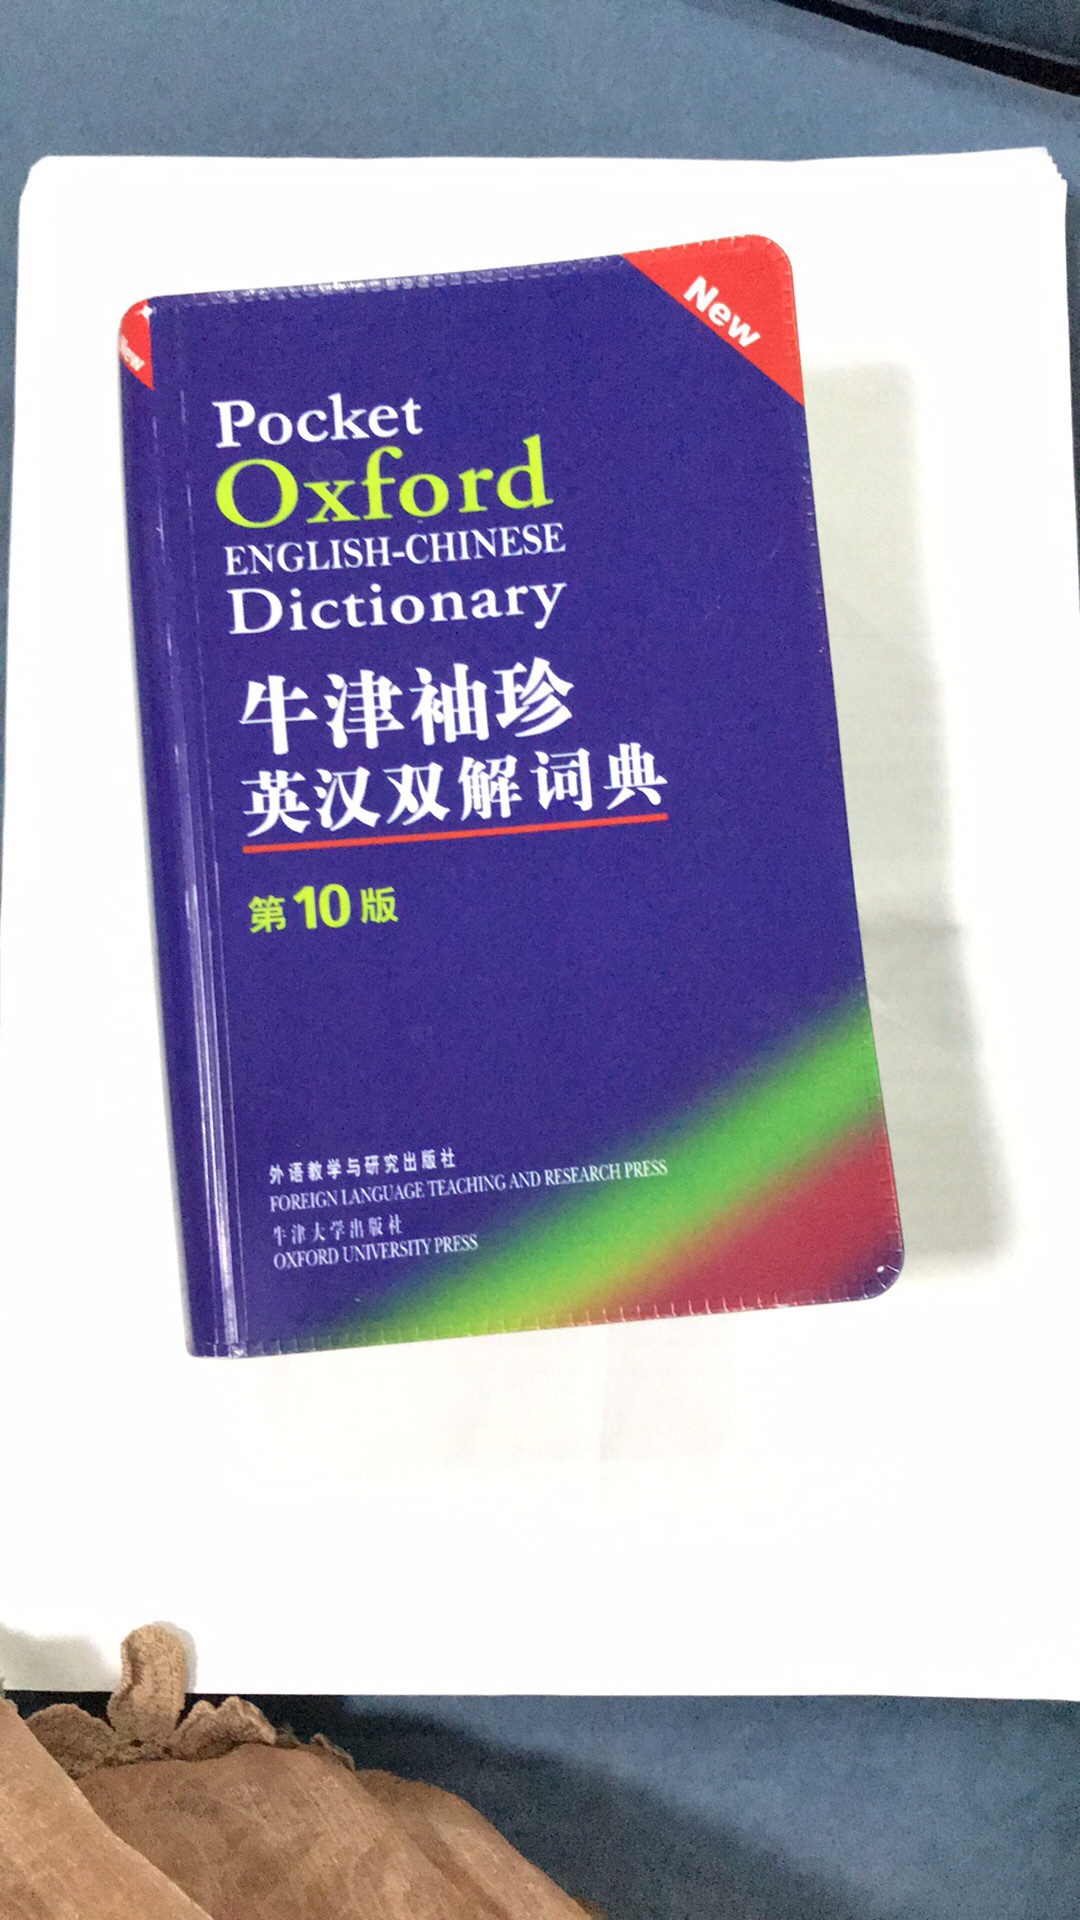 以前买的词典太大太厚，不便携带，这个词典大小很合适，收词也全面，用起来很方便。就是塑料外壳封皮上有点脏，不过擦干净了也蛮好看的。